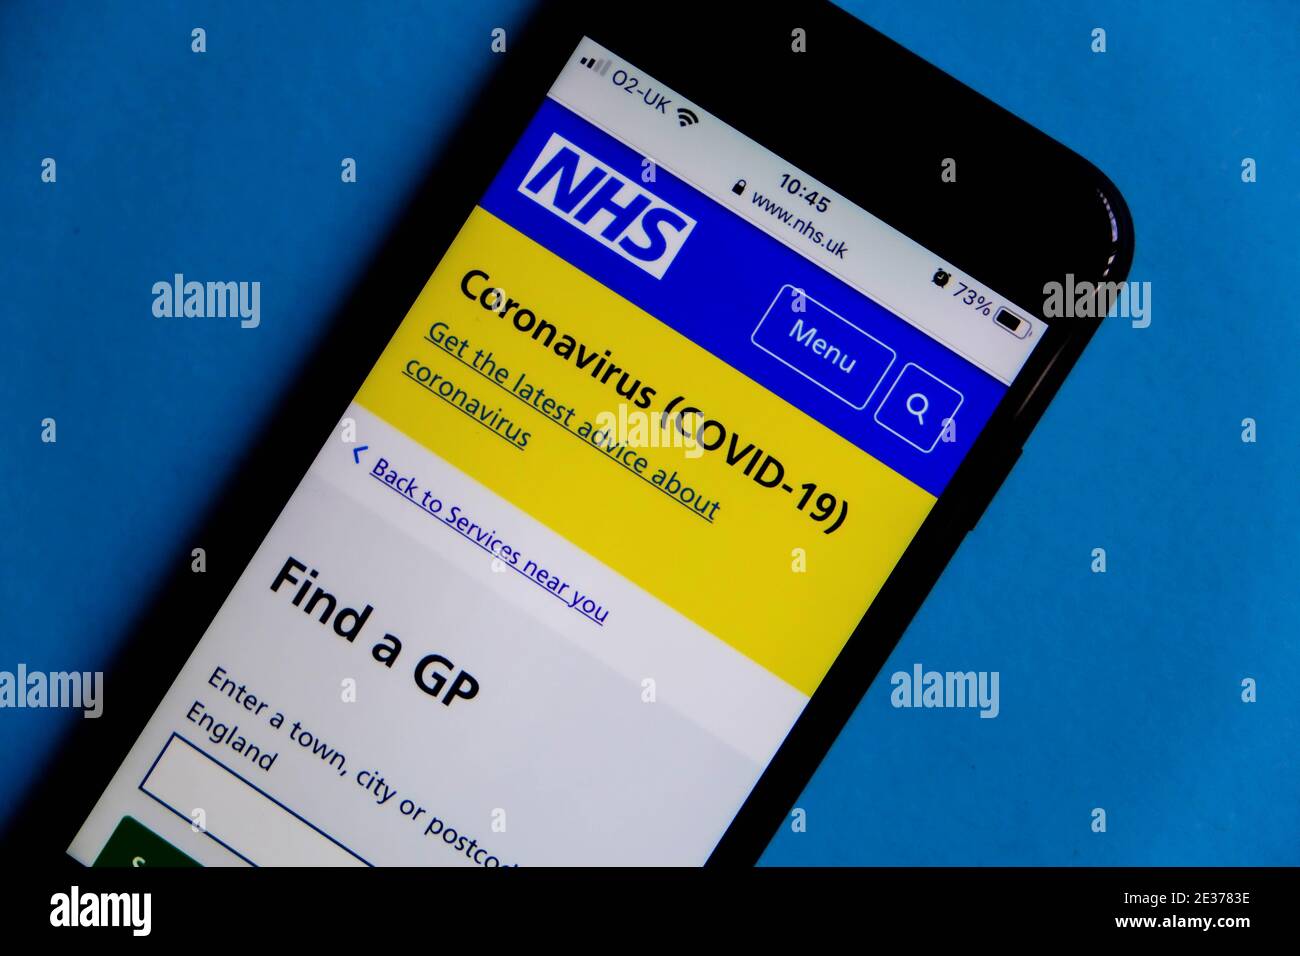 Londres Reino Unido, enero de 17 2021, NHS App Consejo público encontrar un médico o médico local durante Covid-19 Pandemic en un teléfono móvil o smartphone Foto de stock